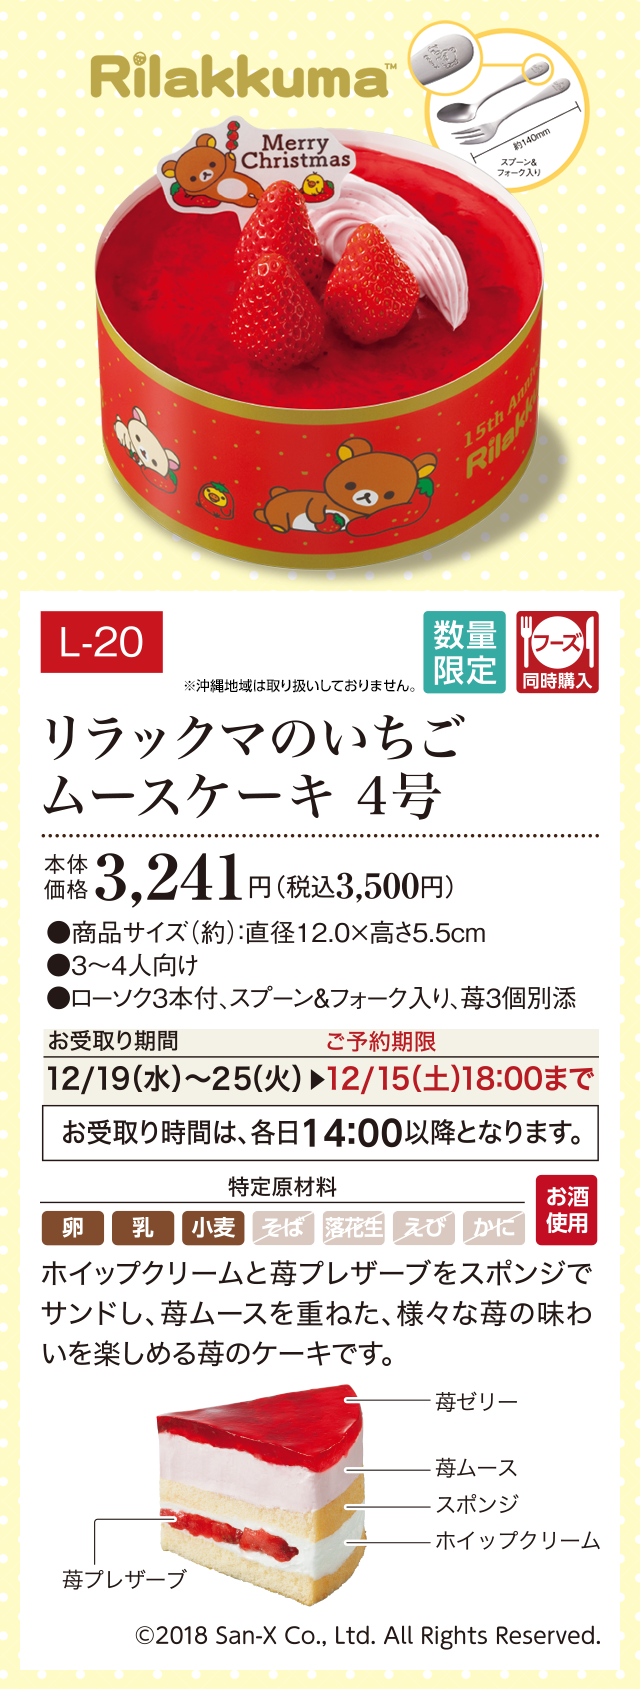 リラックマのいちごムースケーキ 4号 本体価格 3,241円(税込3,500円)